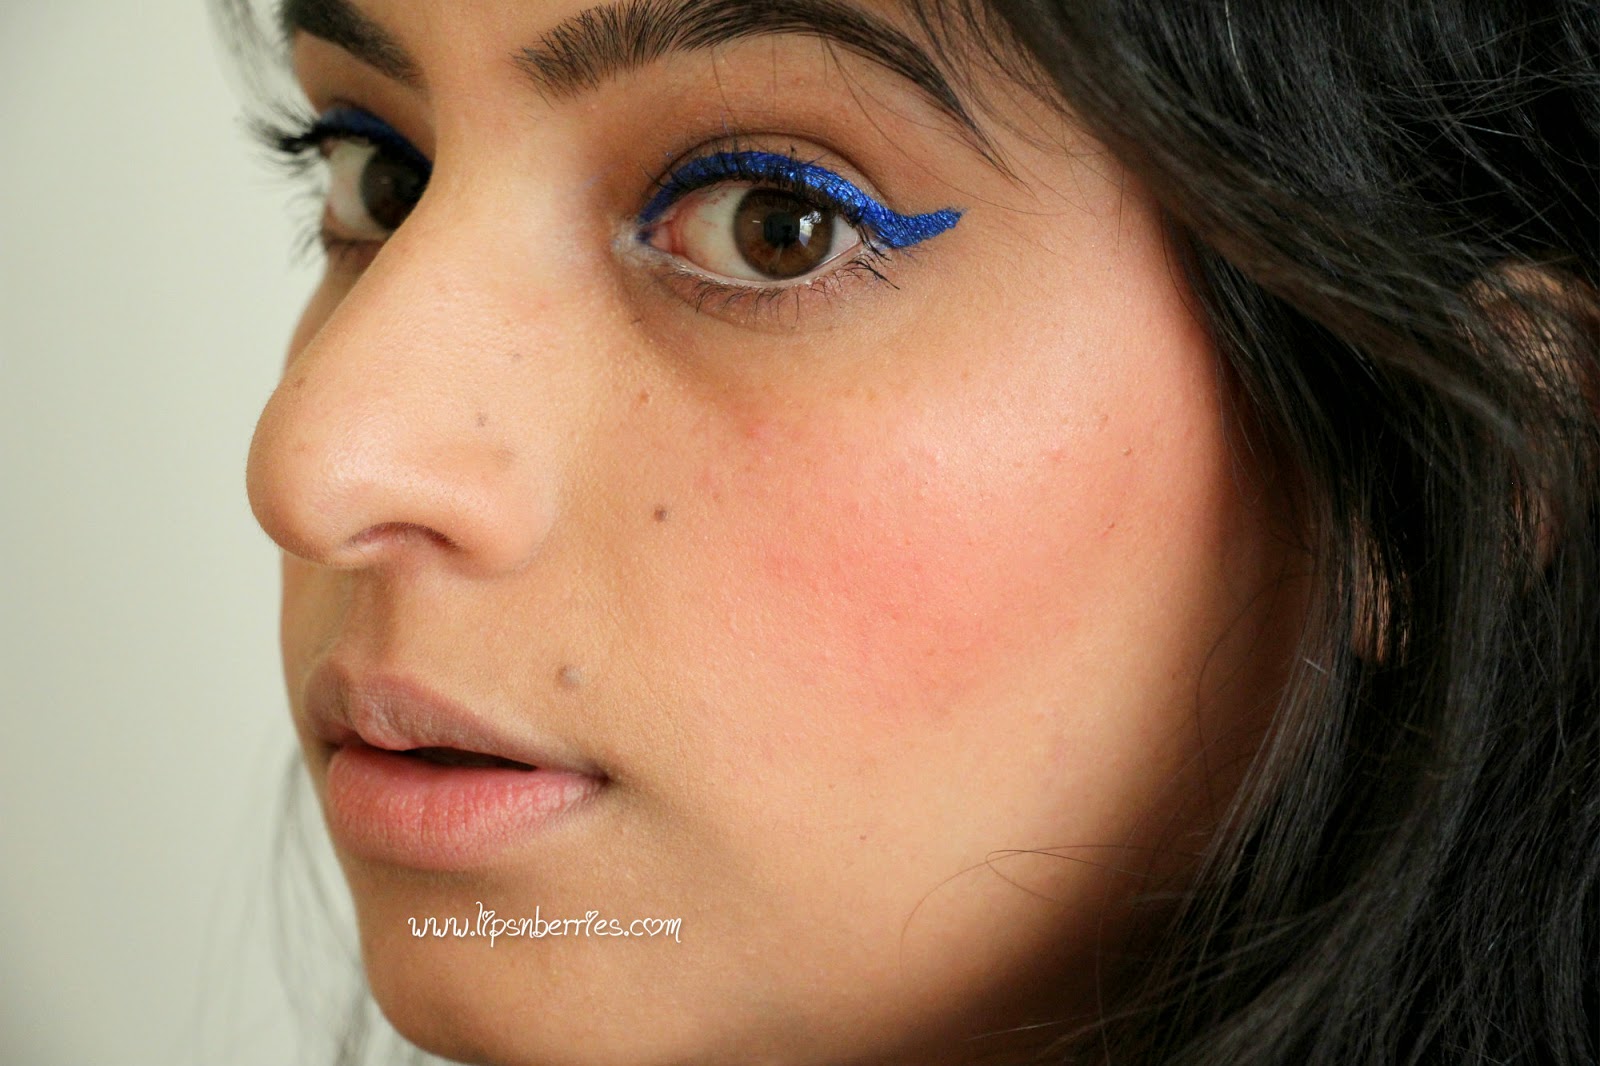 NYX Extreme Blue Eyeliner Vs. Lime Crime Eyeliner in 'Lazuli' | LIPS BERRIES